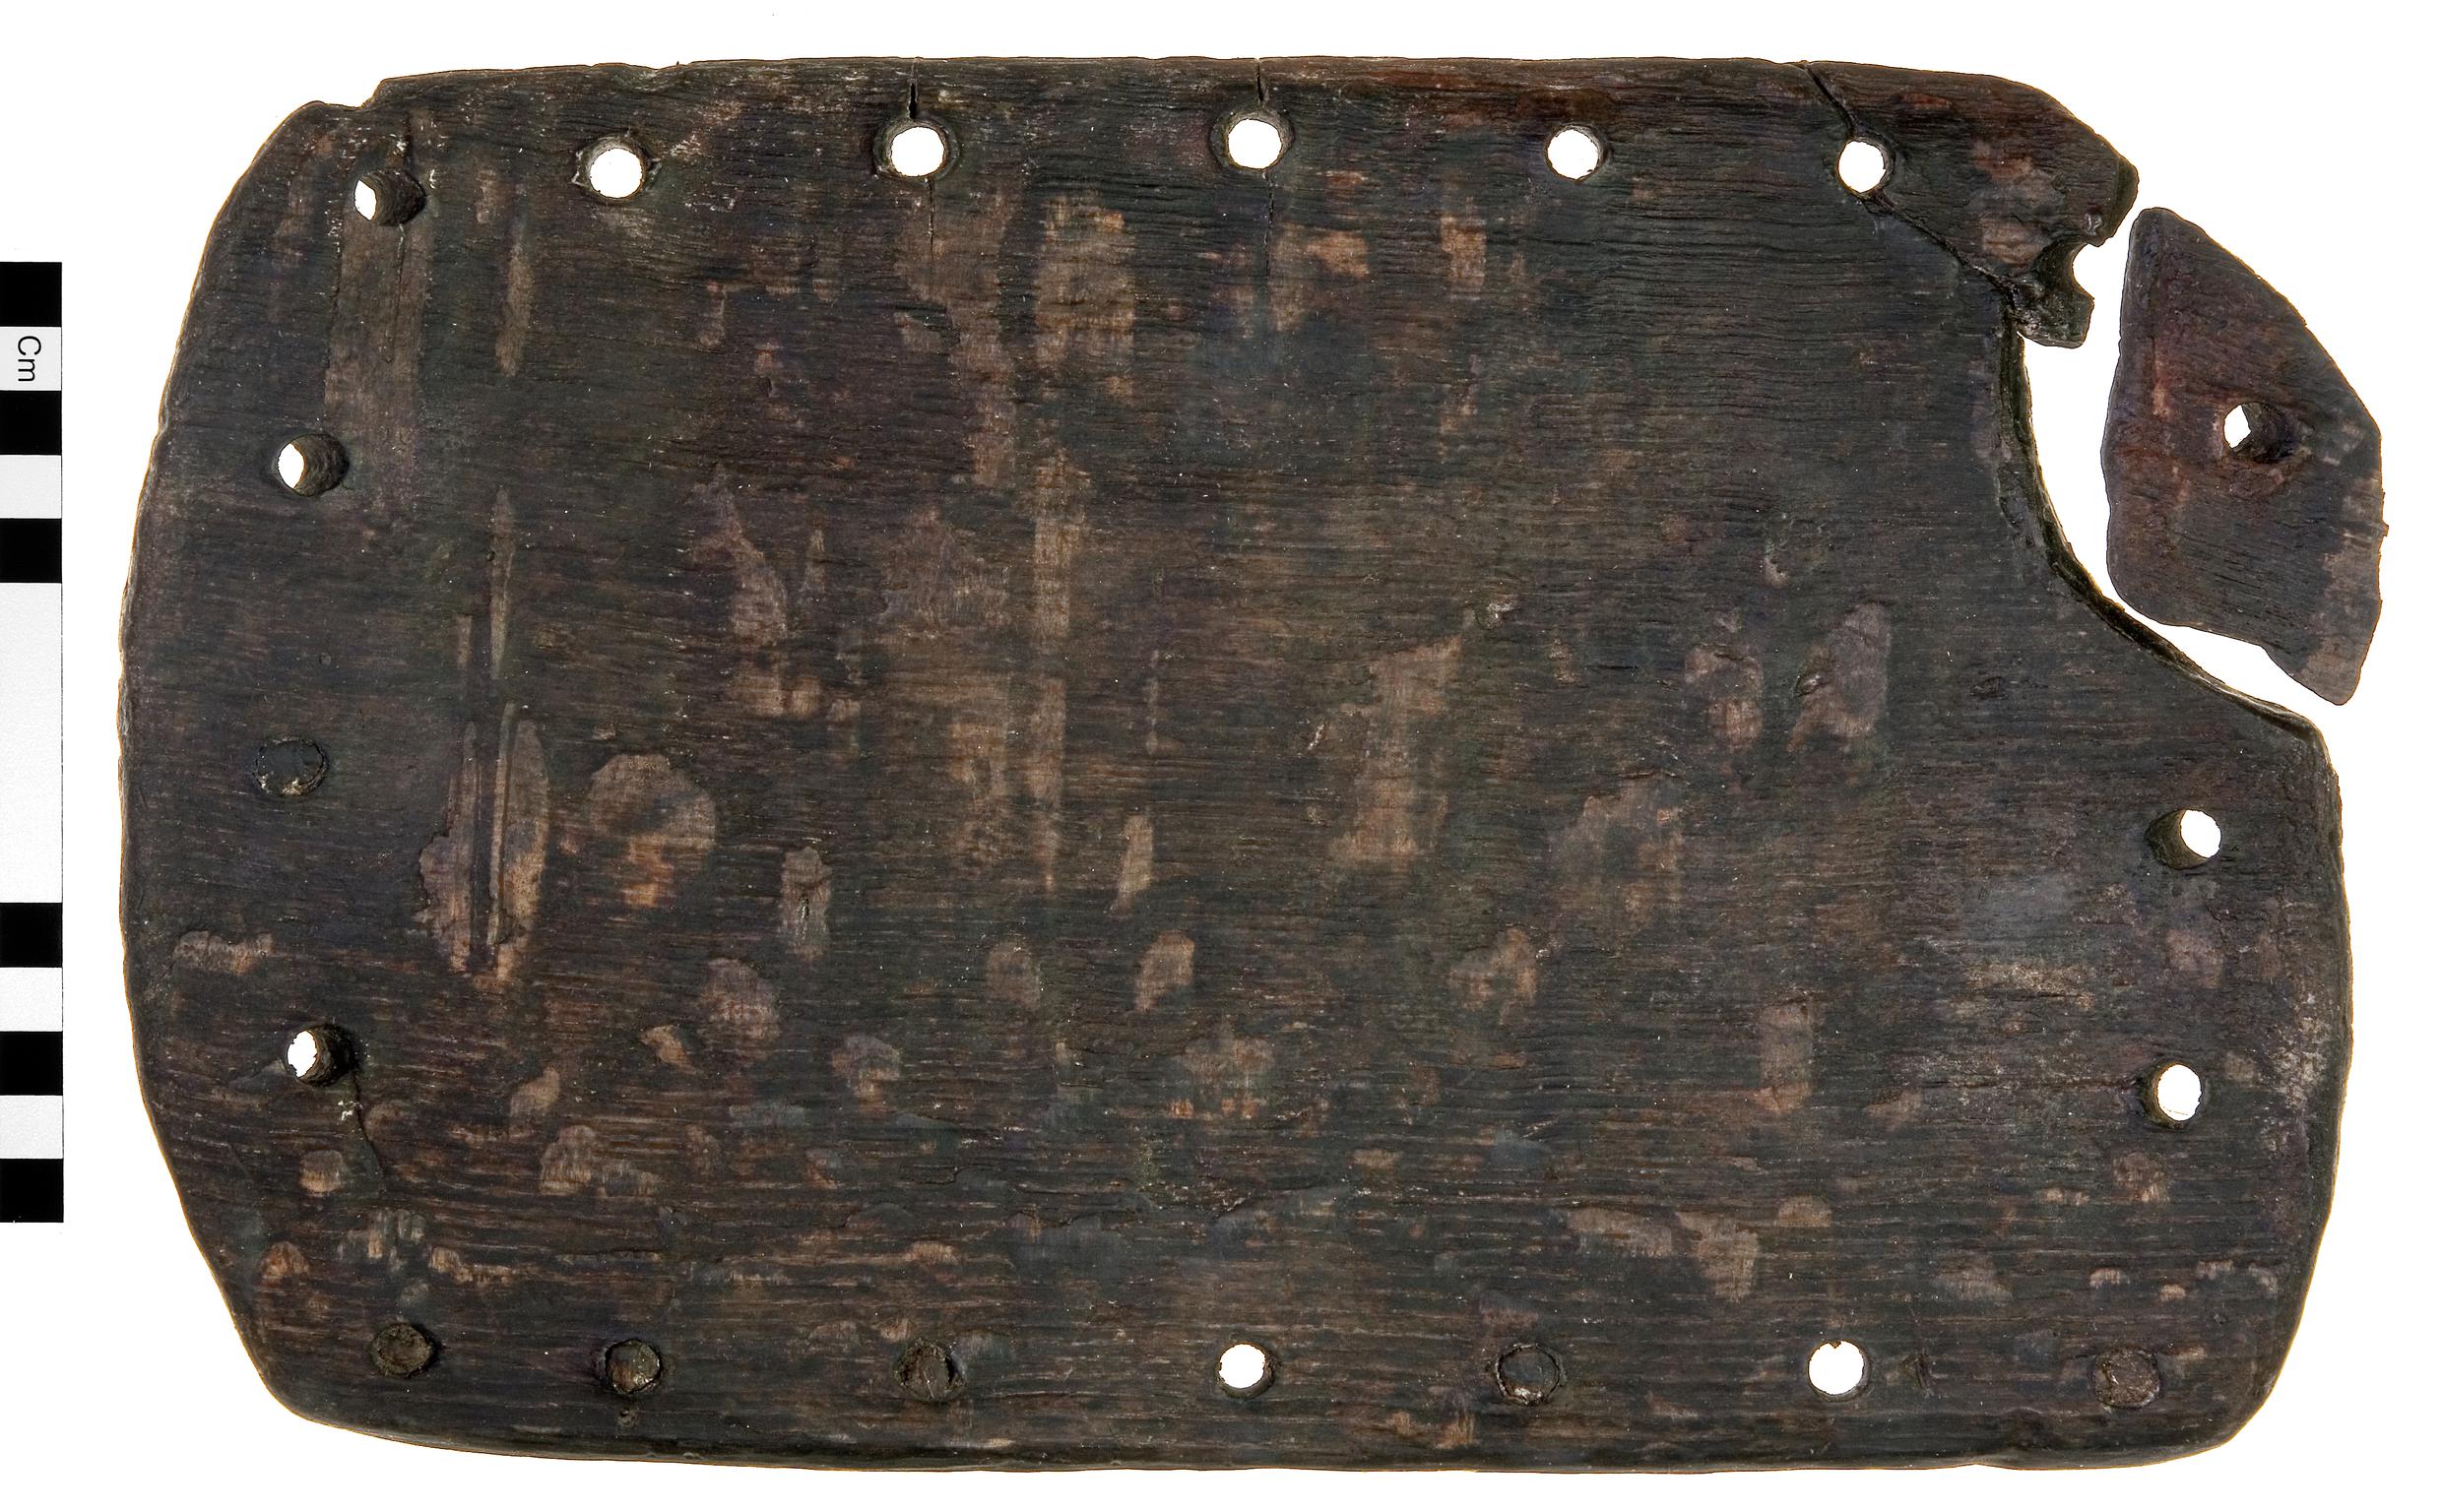 Medieval wooden fish basket